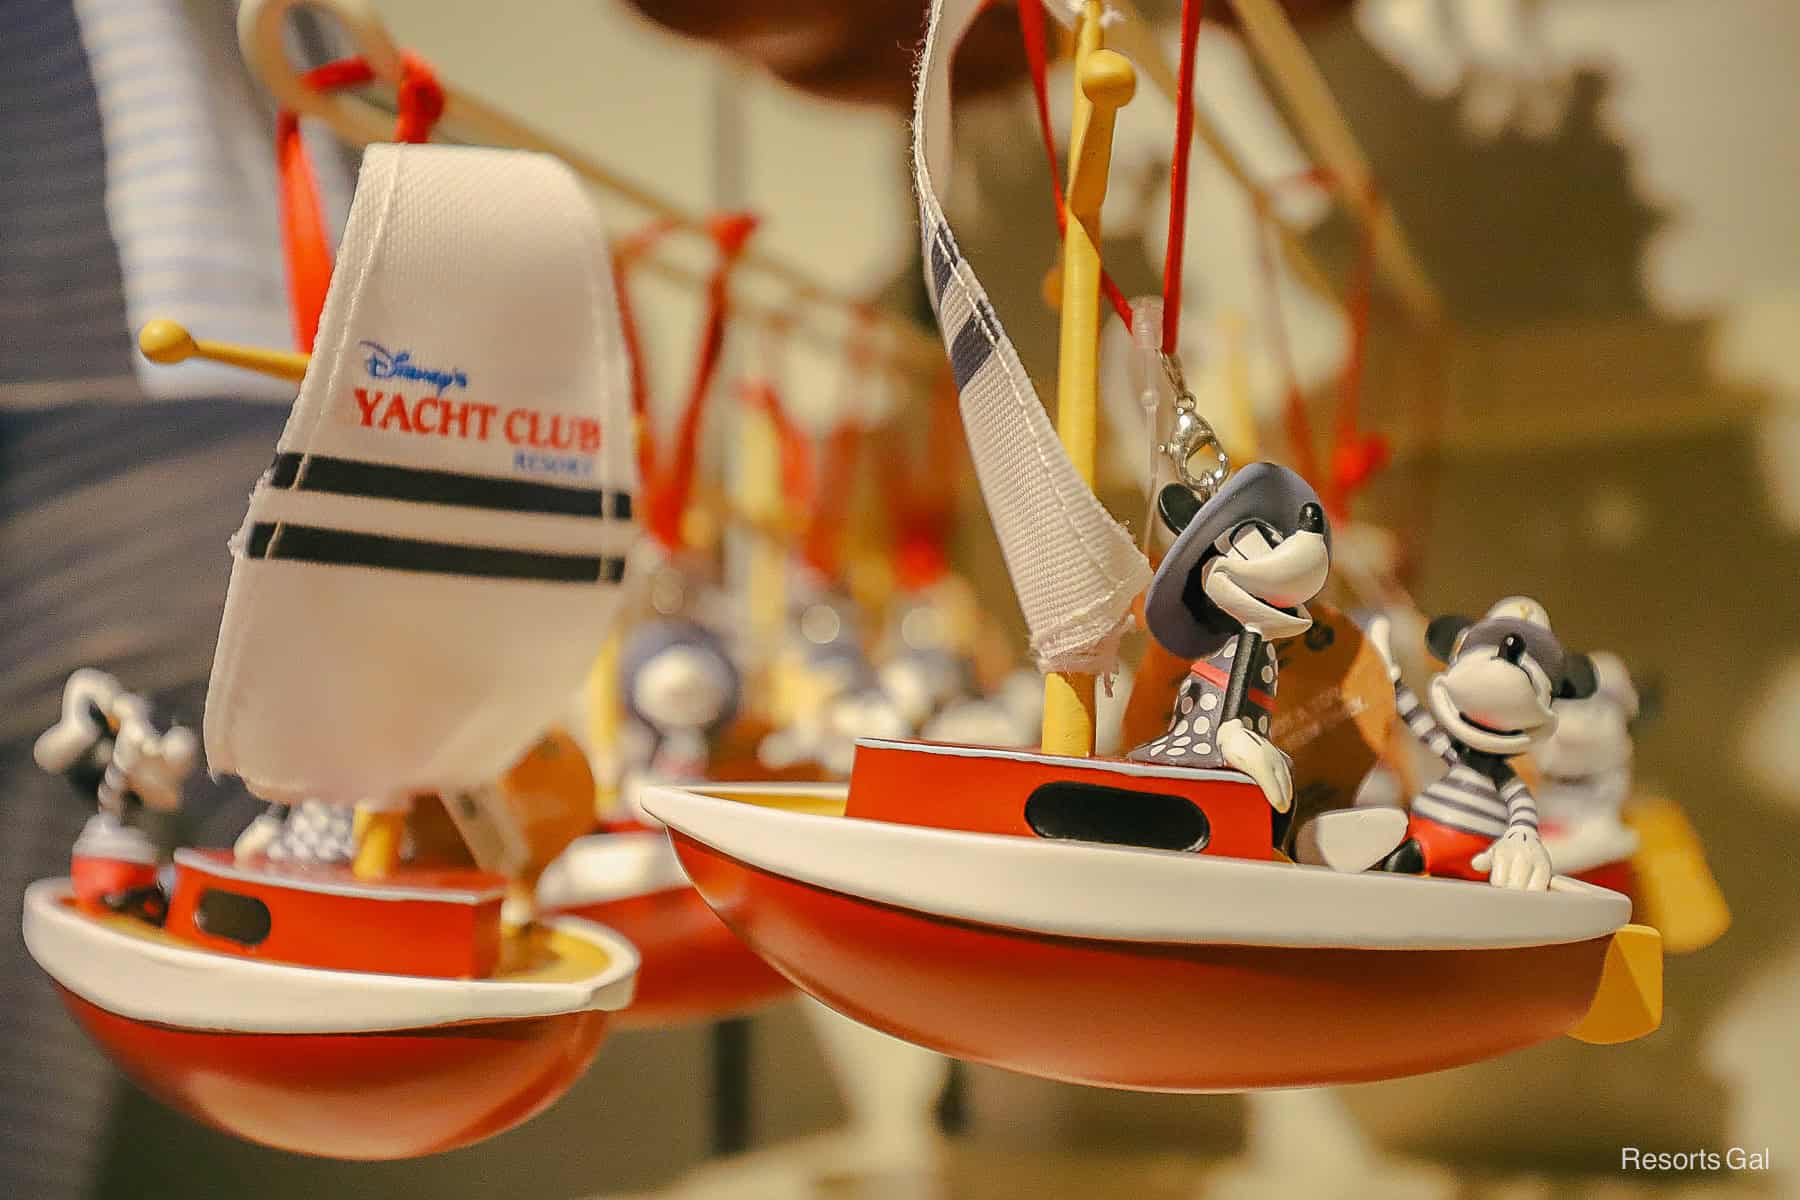 Disney Yacht Club sailboat ornament 